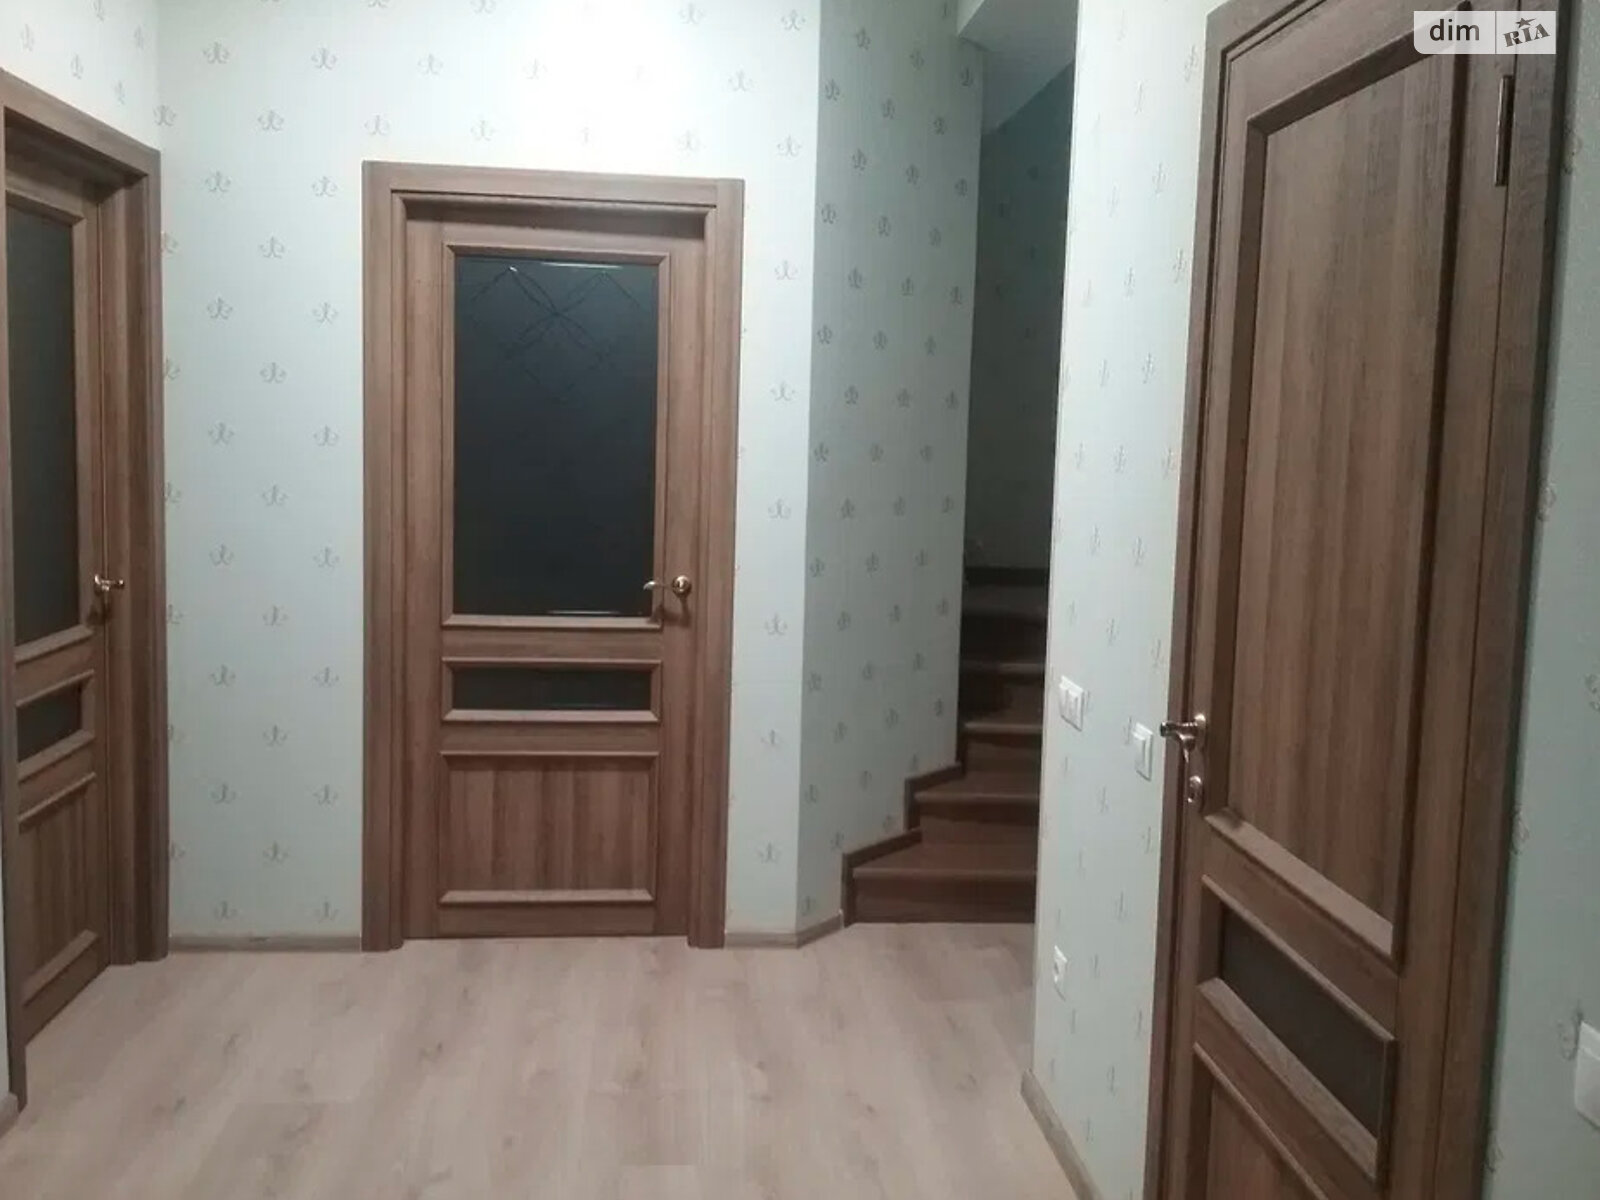 Продажа части дома в Солонке, улица Романа Шухевича, 4 комнаты фото 1